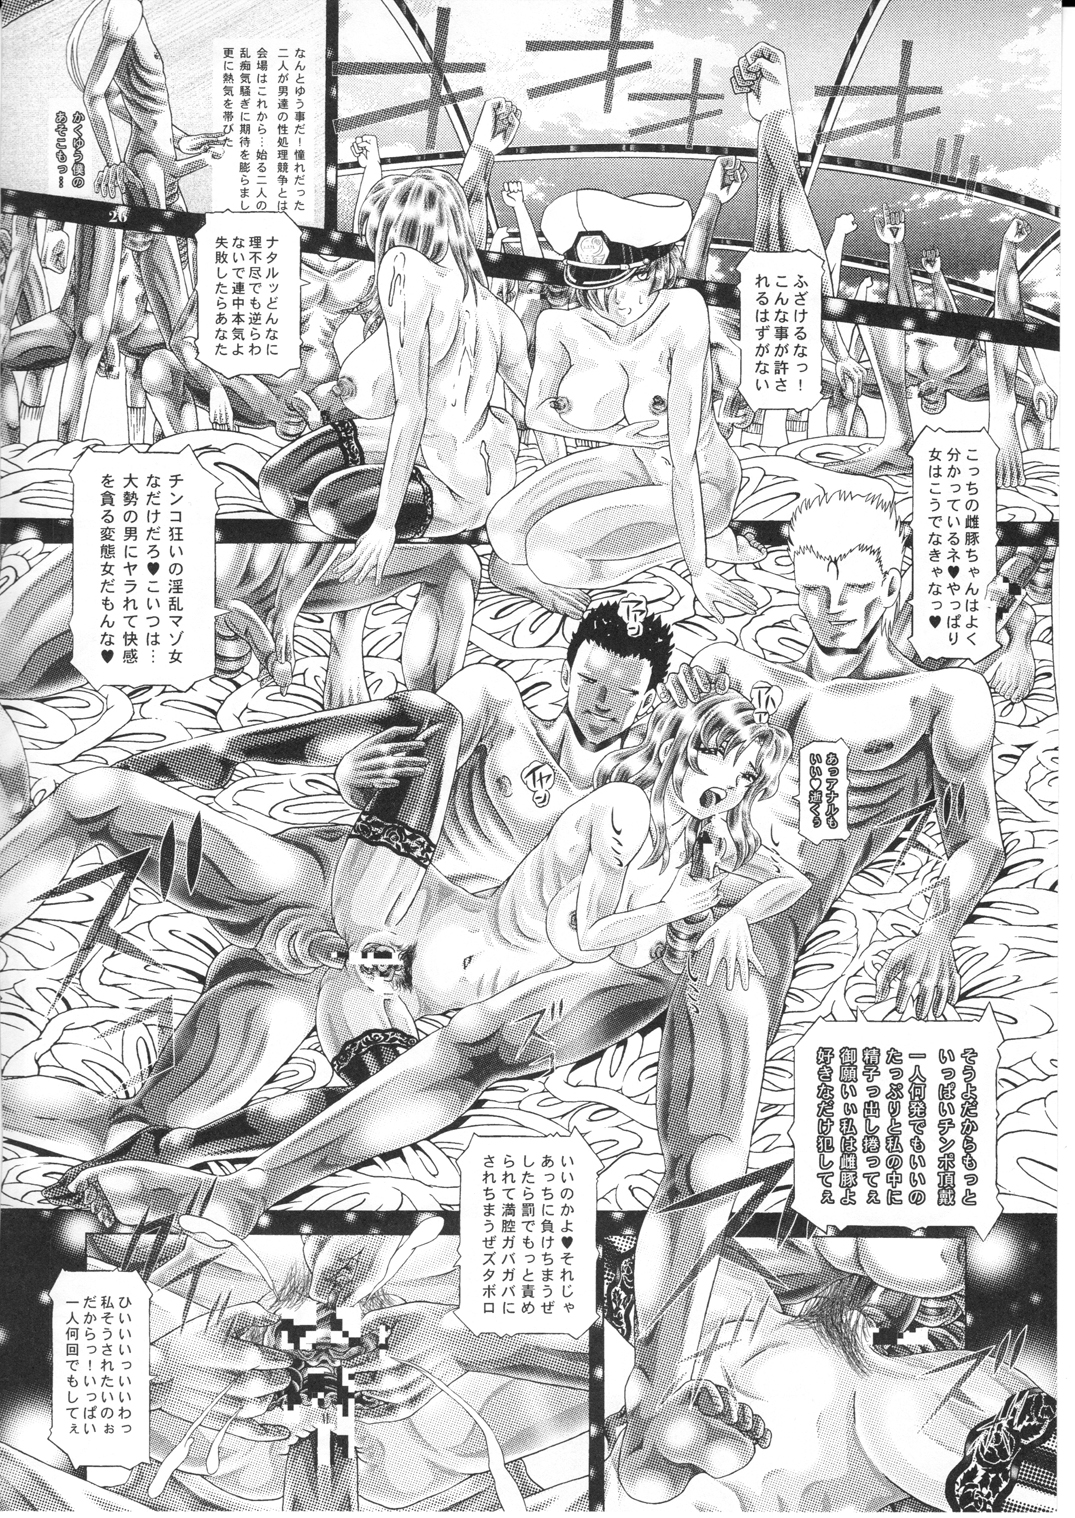 [Kaki no Boo (Kakinomoto Utamaro)] RANDOM NUDE Vol.1.29 [MURRUE RAMIUS] (Gundam Seed) [柿ノ房 (柿ノ本歌麿)] 女性兵士ランダムヌード 第壱.二九段 マリューラミアス遍 (ガンダムSEED)